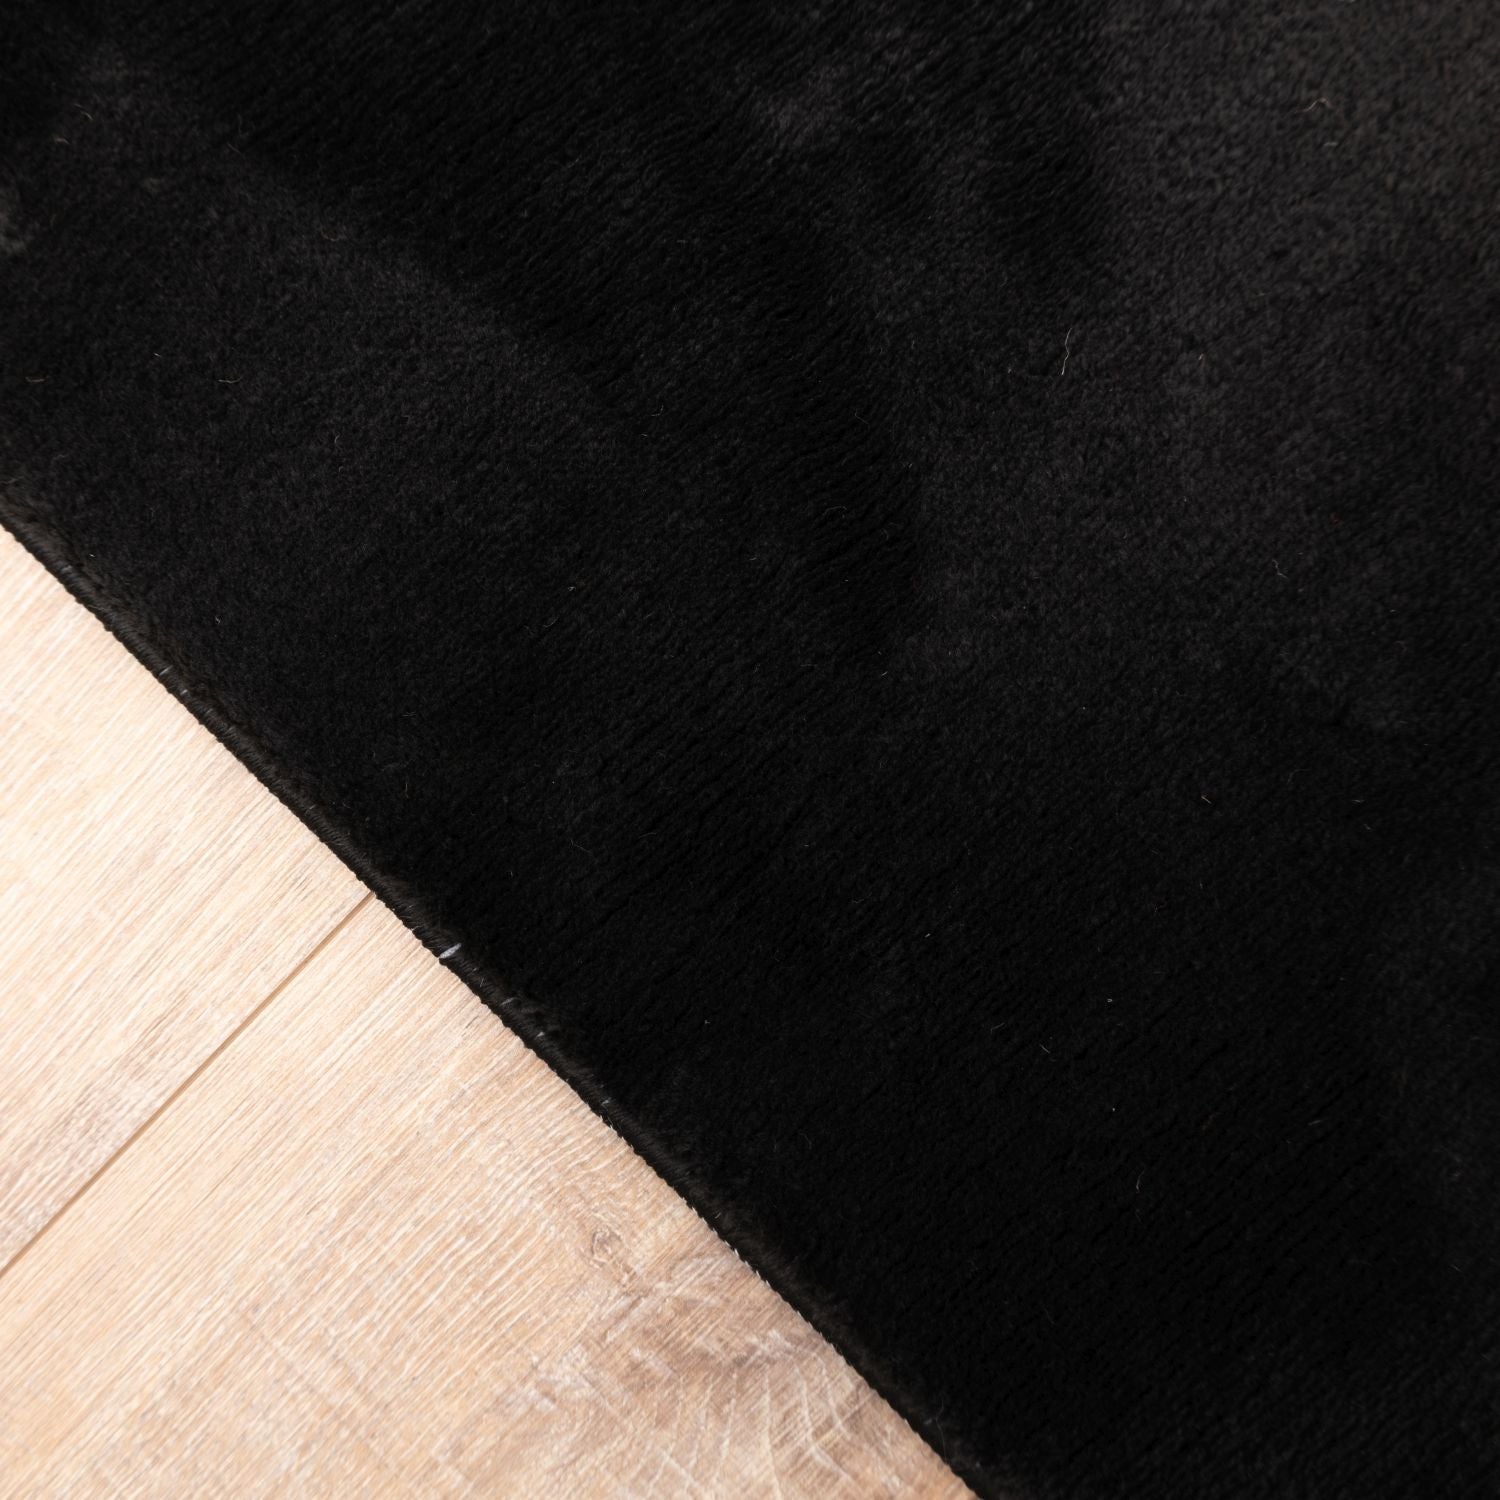 Zwart Tapijt Wasbaar Laagpolig Vloerkleed met Anti Slip Omid Soft Comfort Wasbaar op 30°